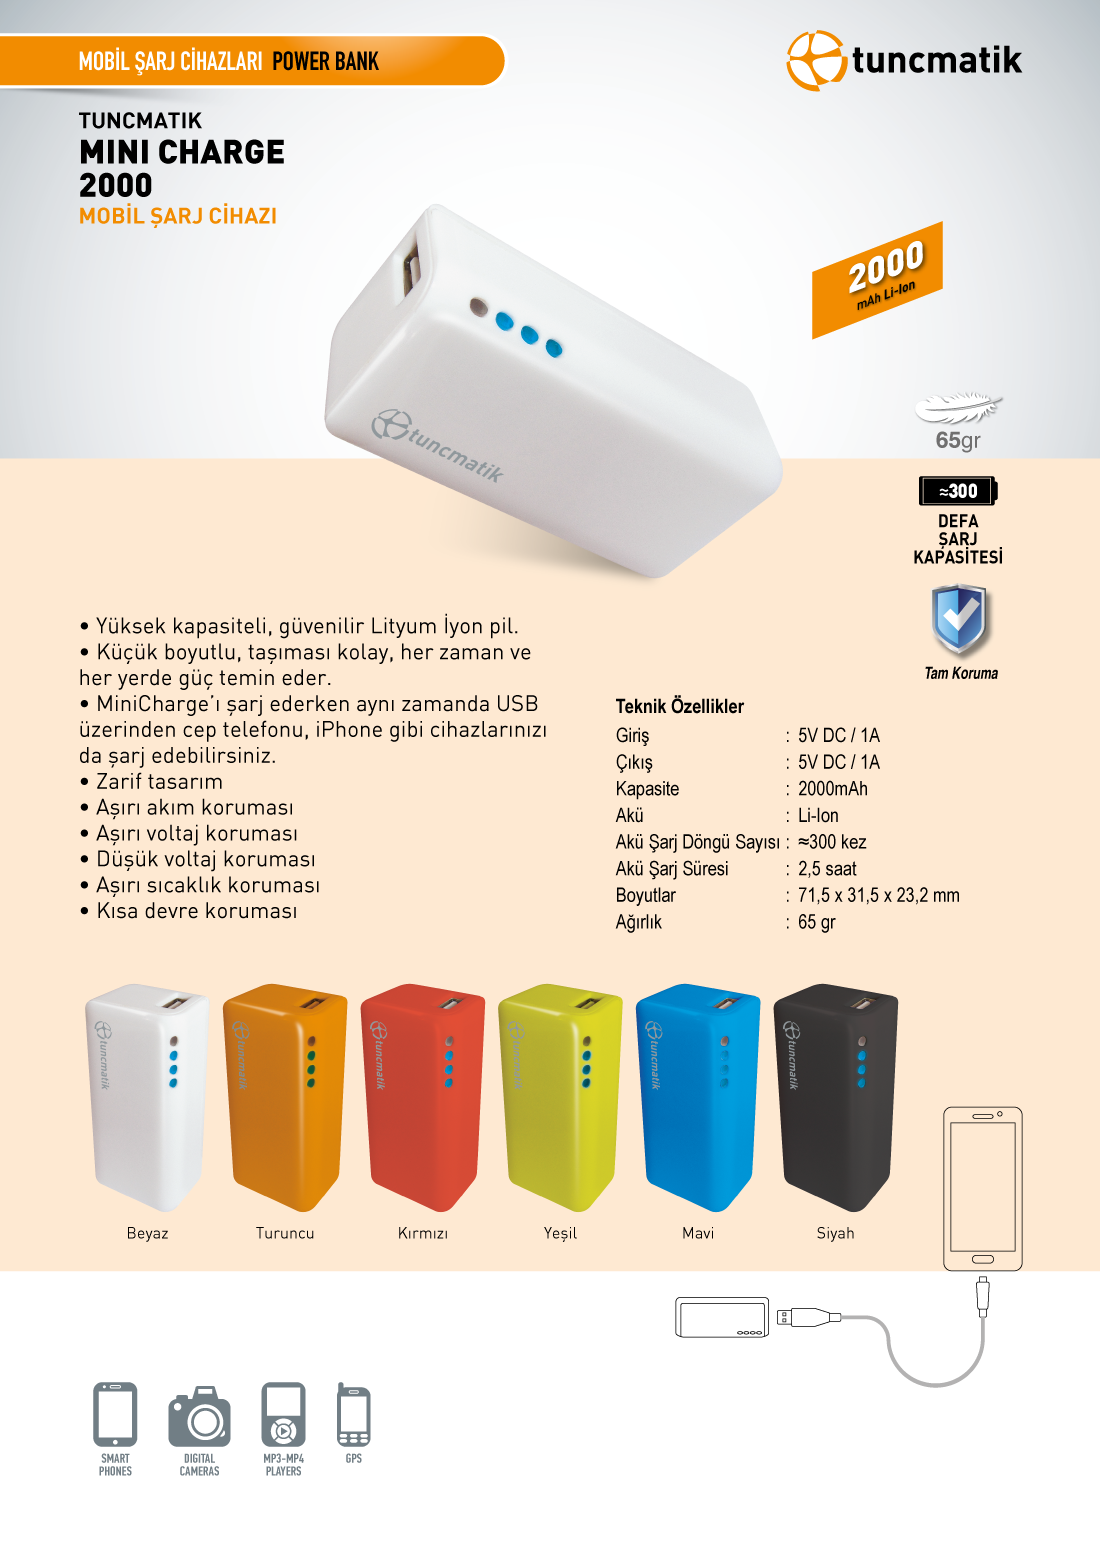 EE PowerBar 2600 Mah. Taşınabilir Şarj Cihazı 8.90 tl